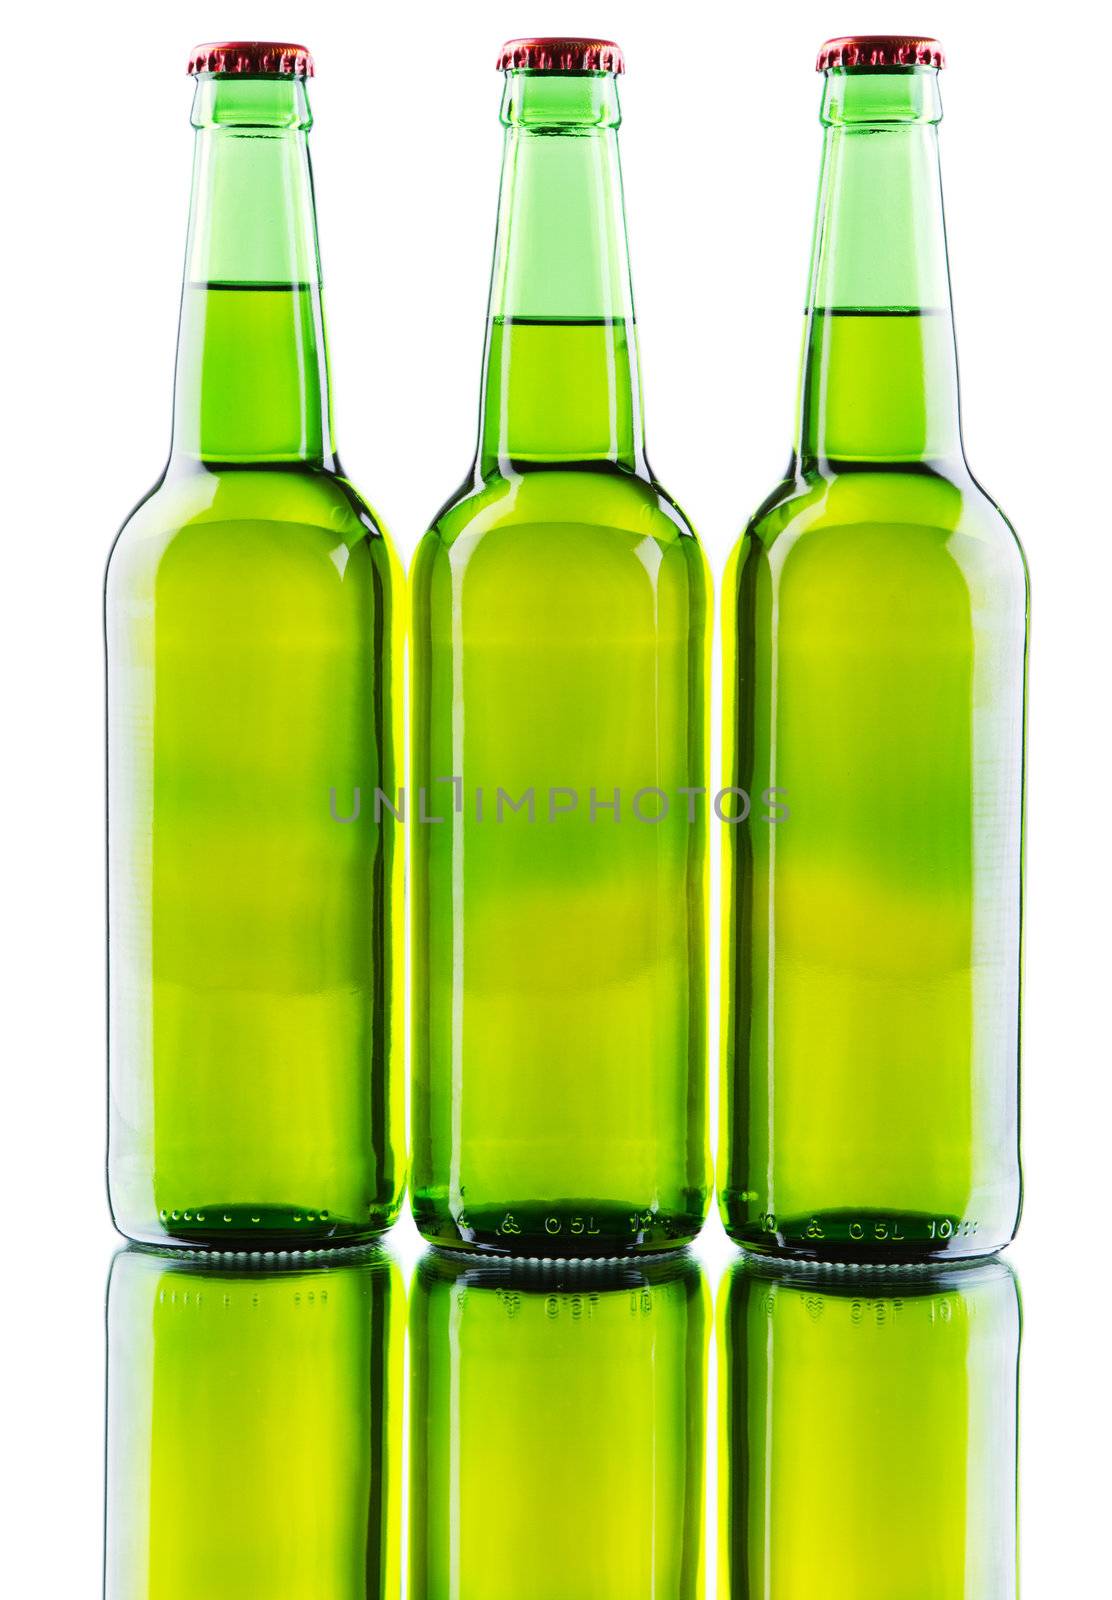 Beer bottles isolated on white background, studio still-life